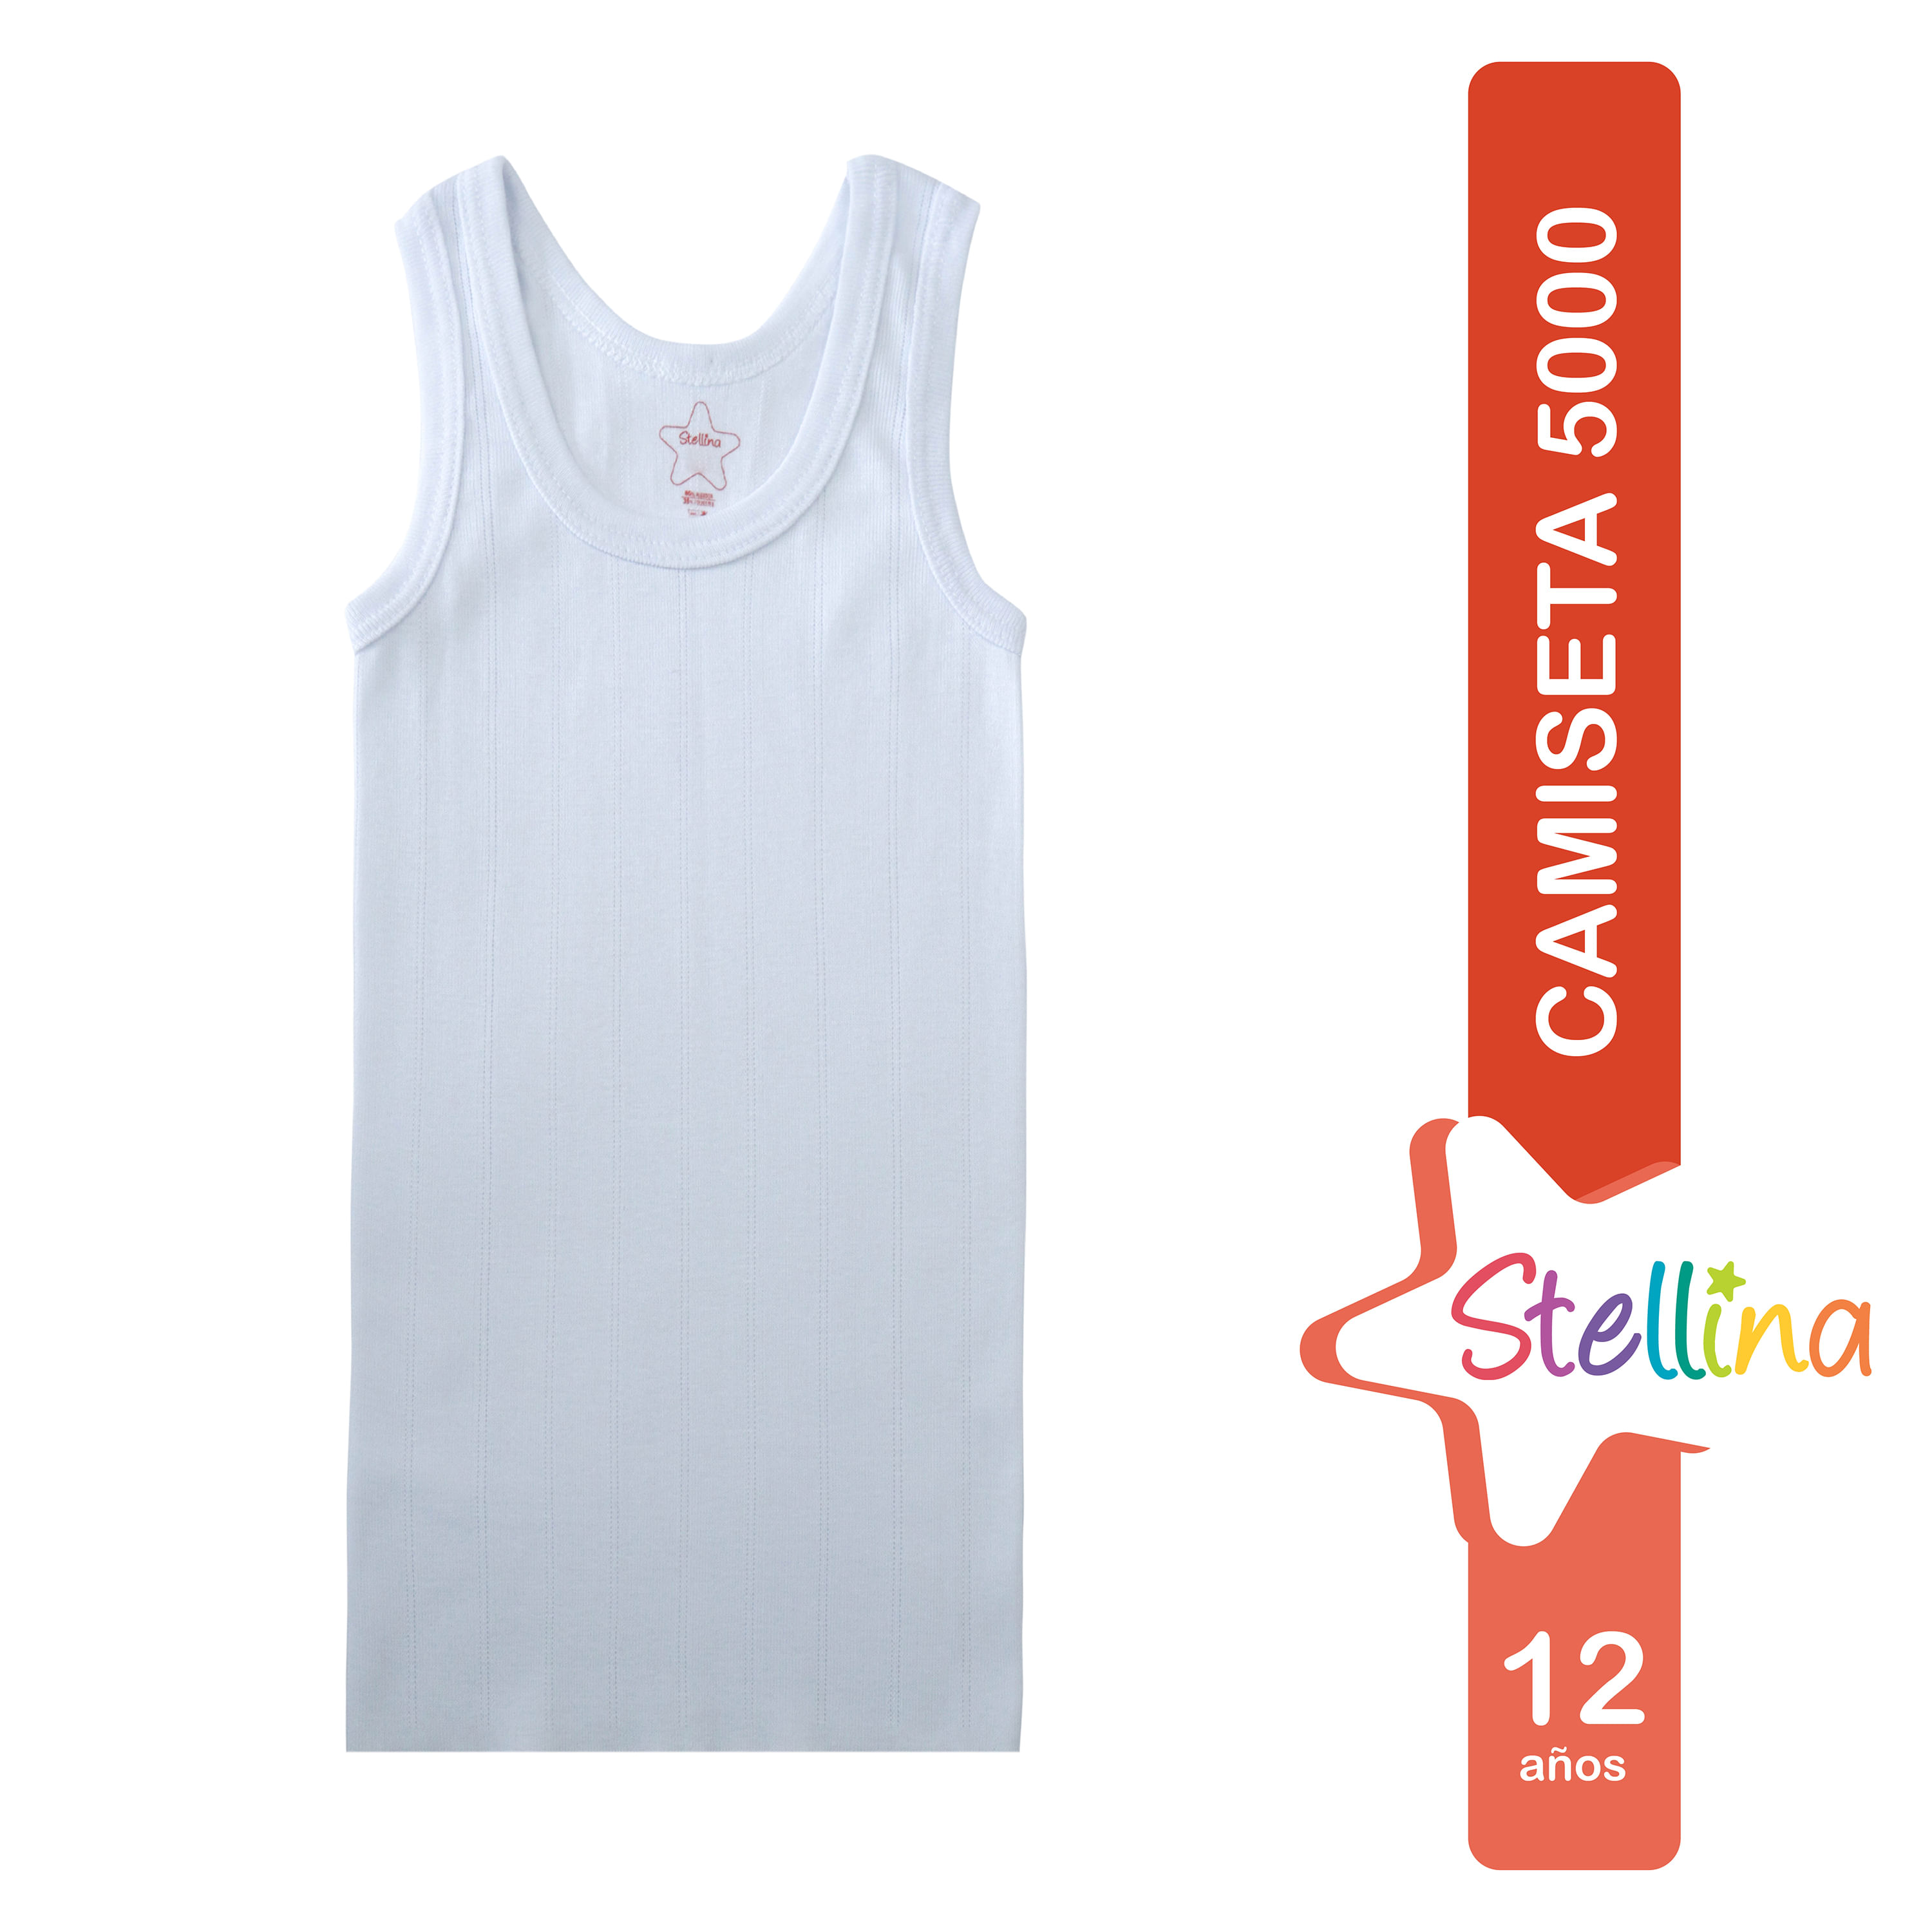 Comprar Camiseta uso interior Stellina, para niño -Talla 12, Walmart Costa  Rica - Maxi Palí